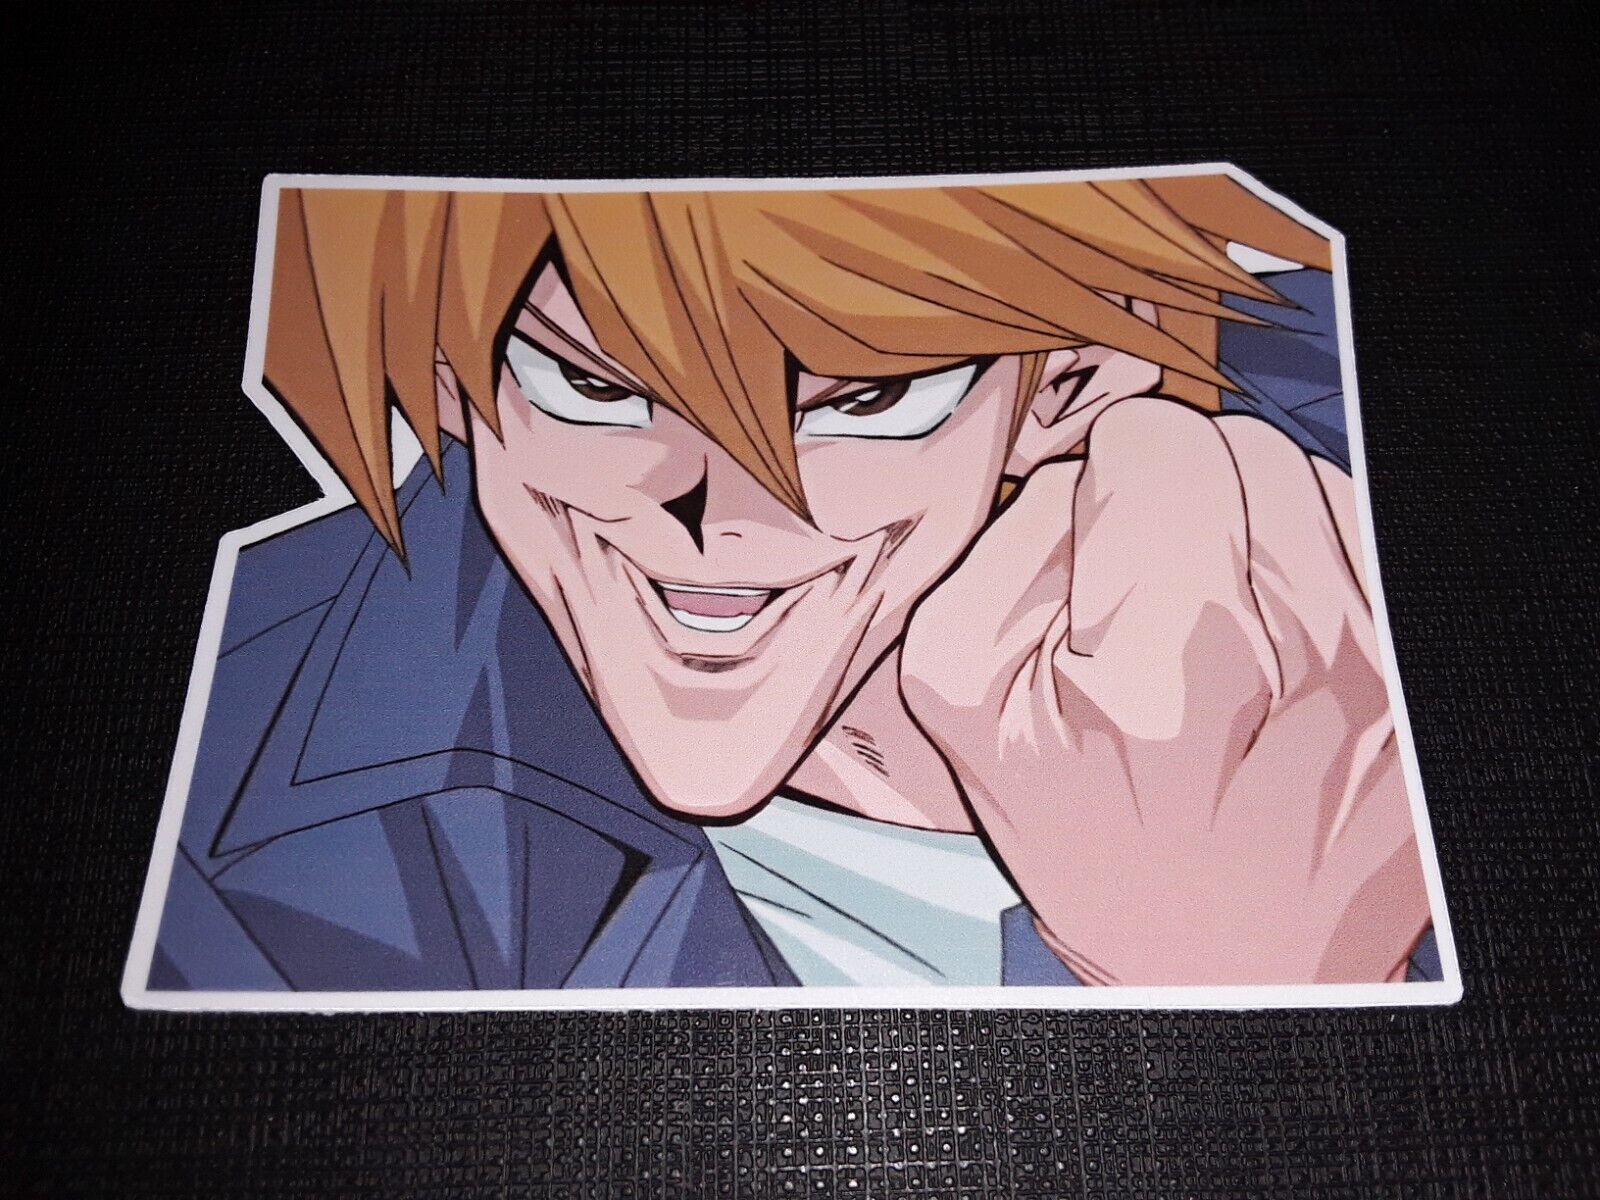 Yugioh Joey Wheeler Funny Meme Face Glossy Sticker Anime Waterproof